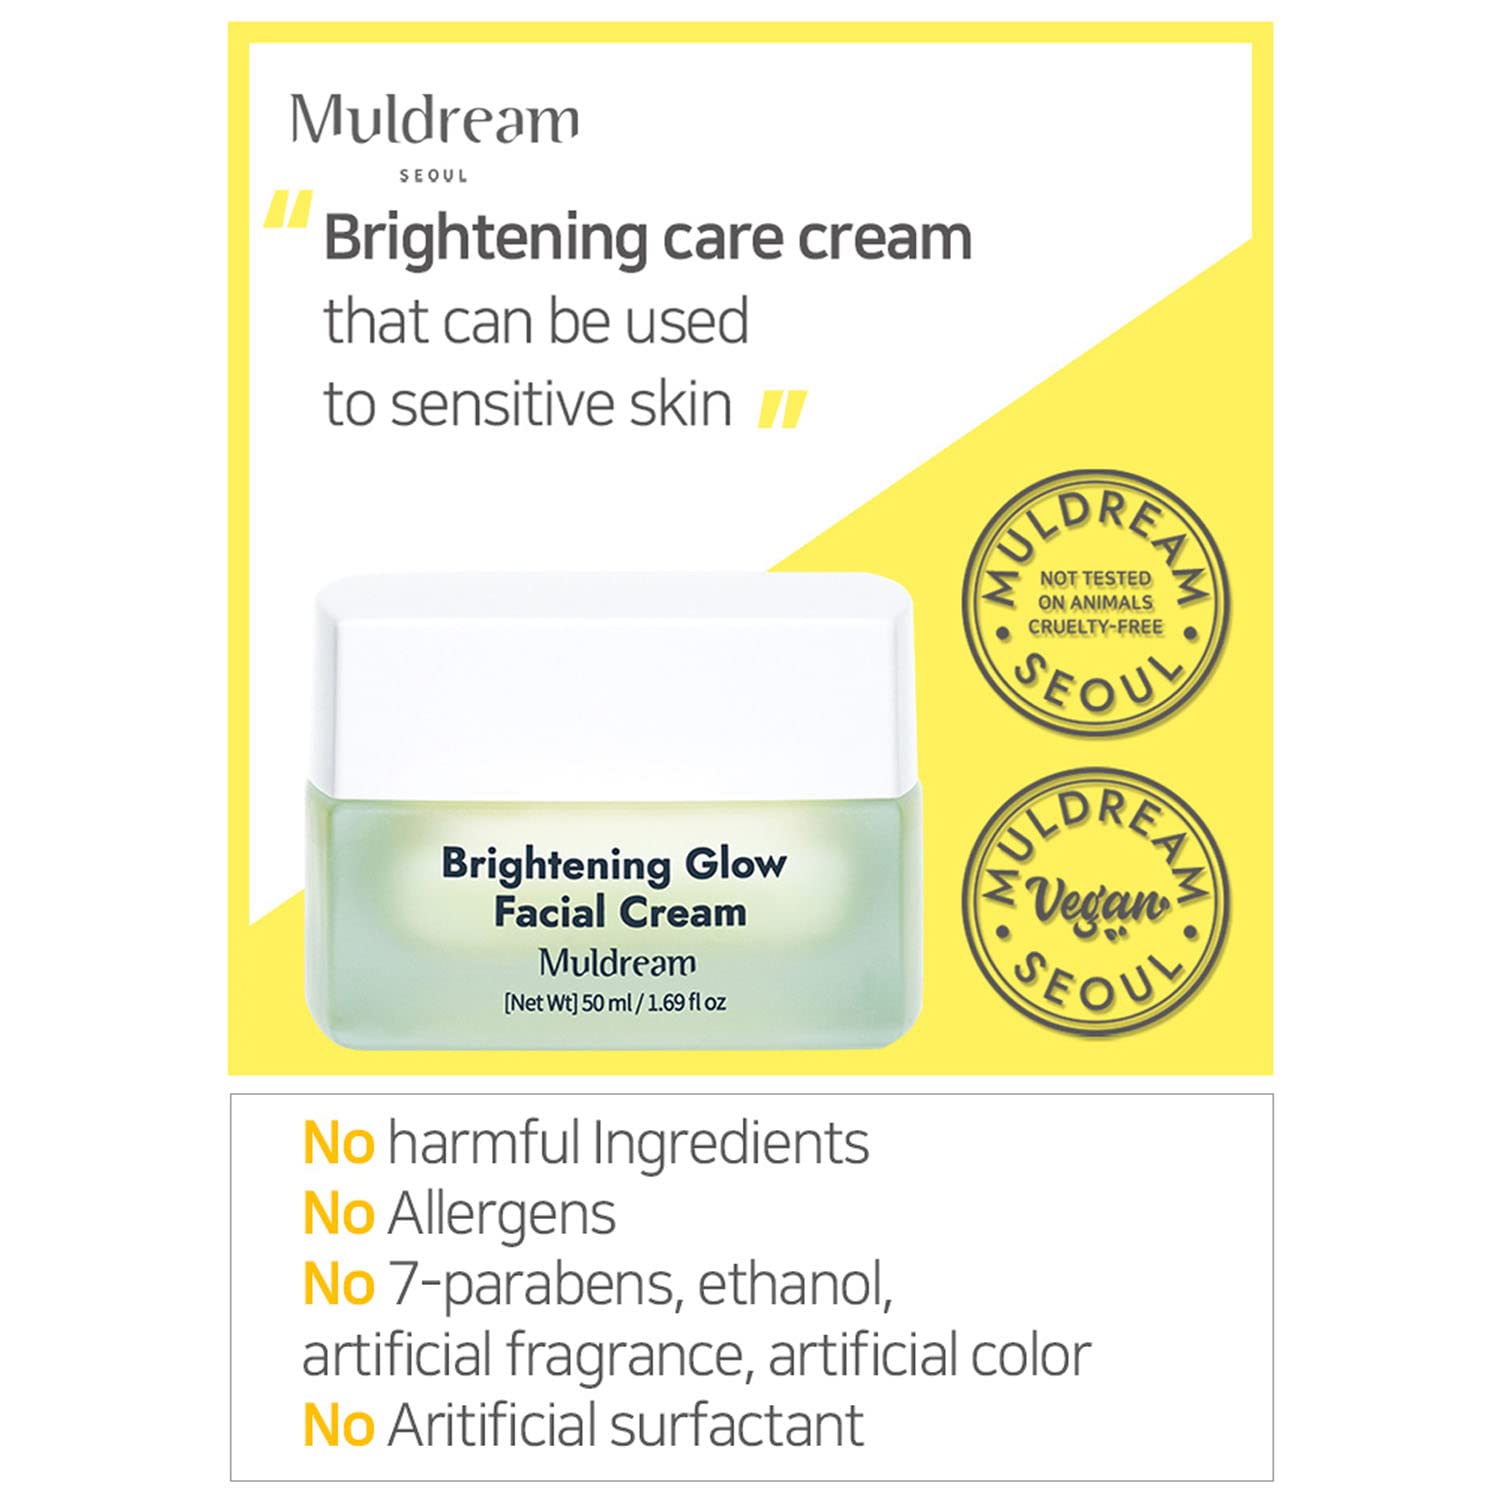 Muldream Brightening Glow Facial Cream 50ml